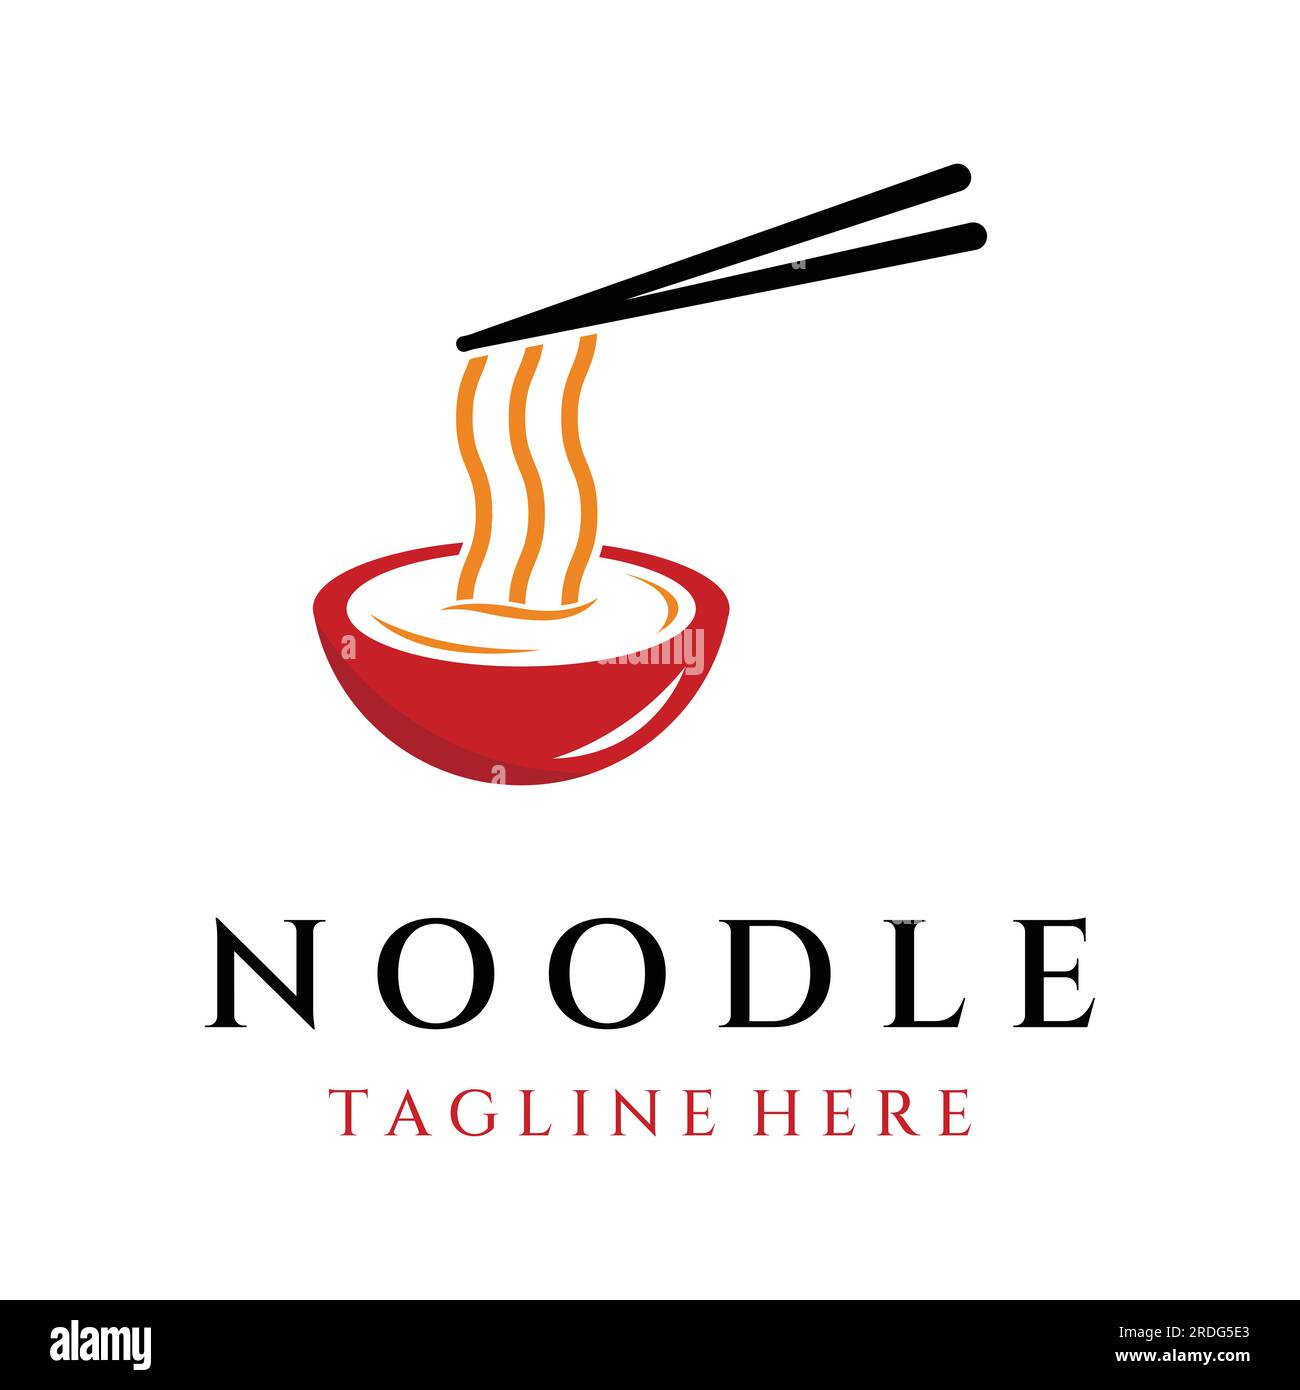 Logo-Design für köstliche chinesische und japanische Nudelsuppe und Ramen-Gerichte, asiatische Speisen. Logos für Unternehmen, Restaurants, Cafés und Geschäfte. Stock Vektor